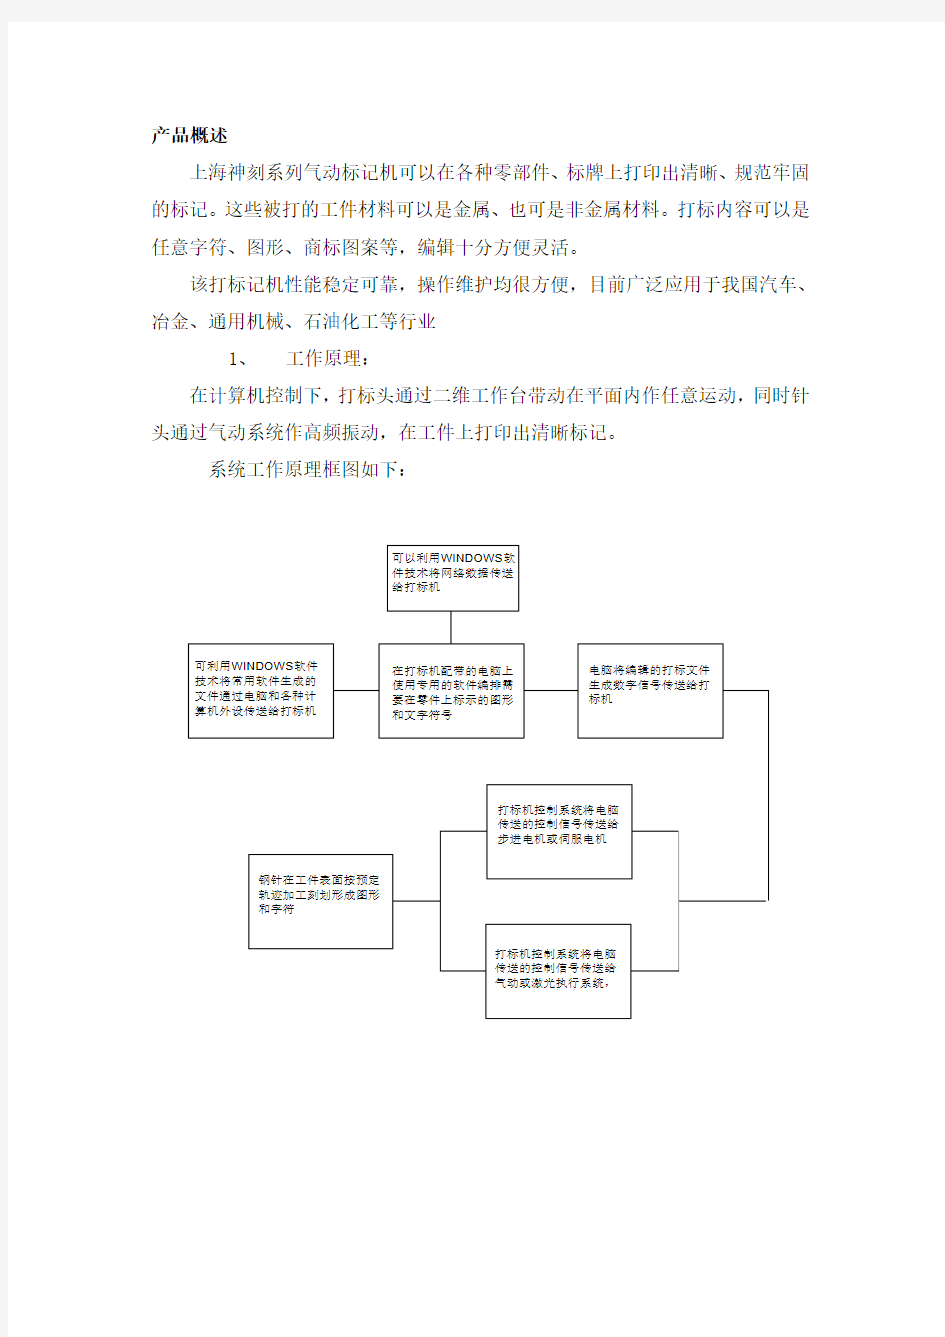 上海神刻系列气动打标机使用说明书档